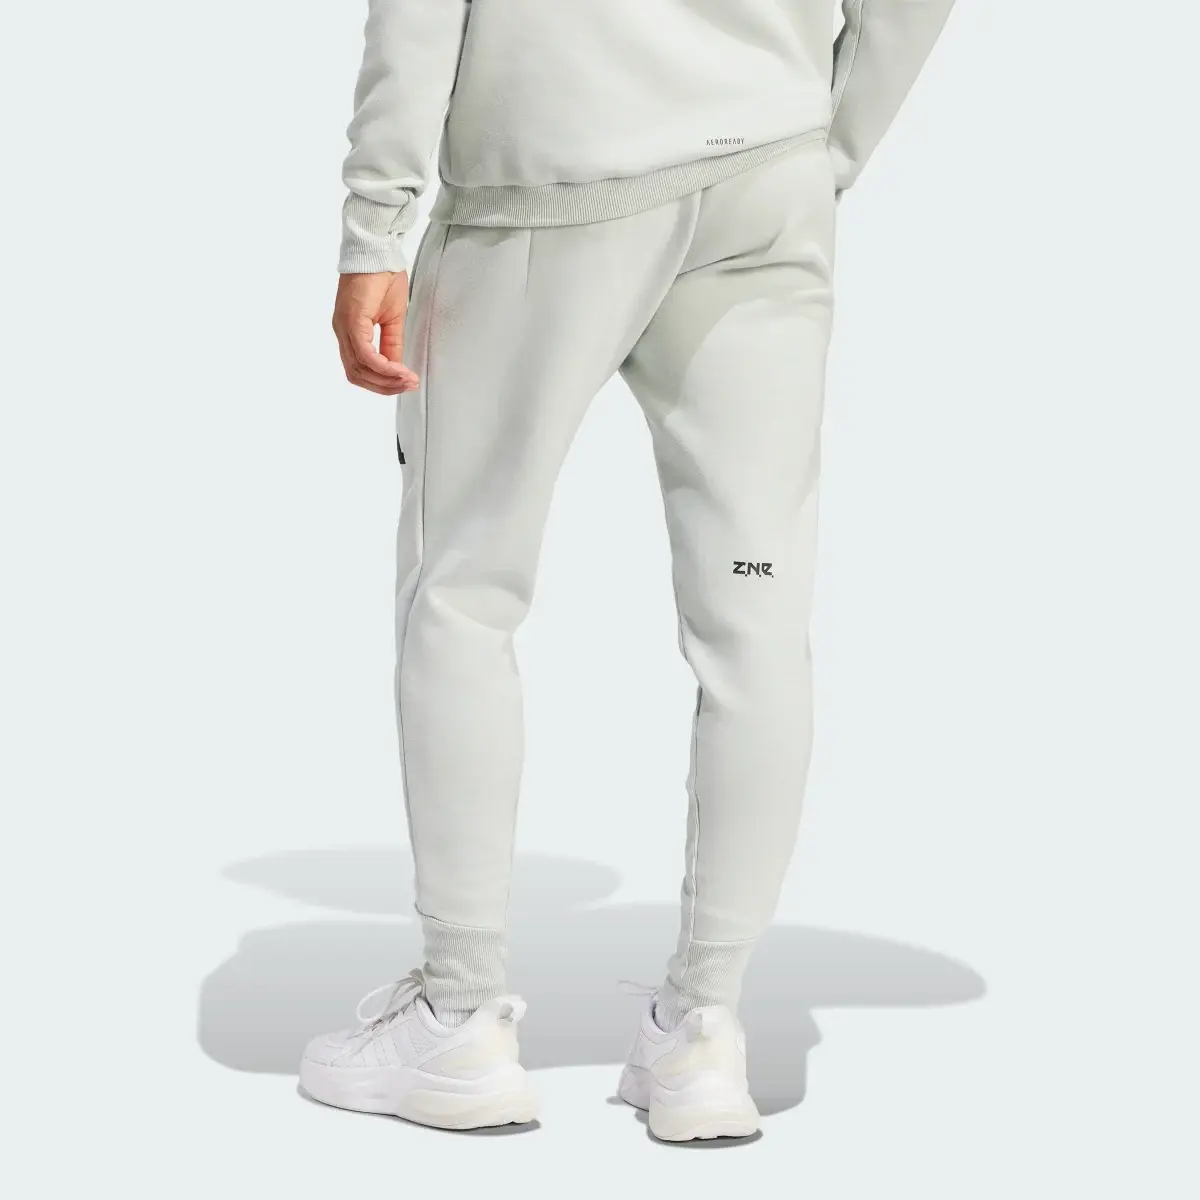 Adidas Z.N.E. Premium Pants. 2